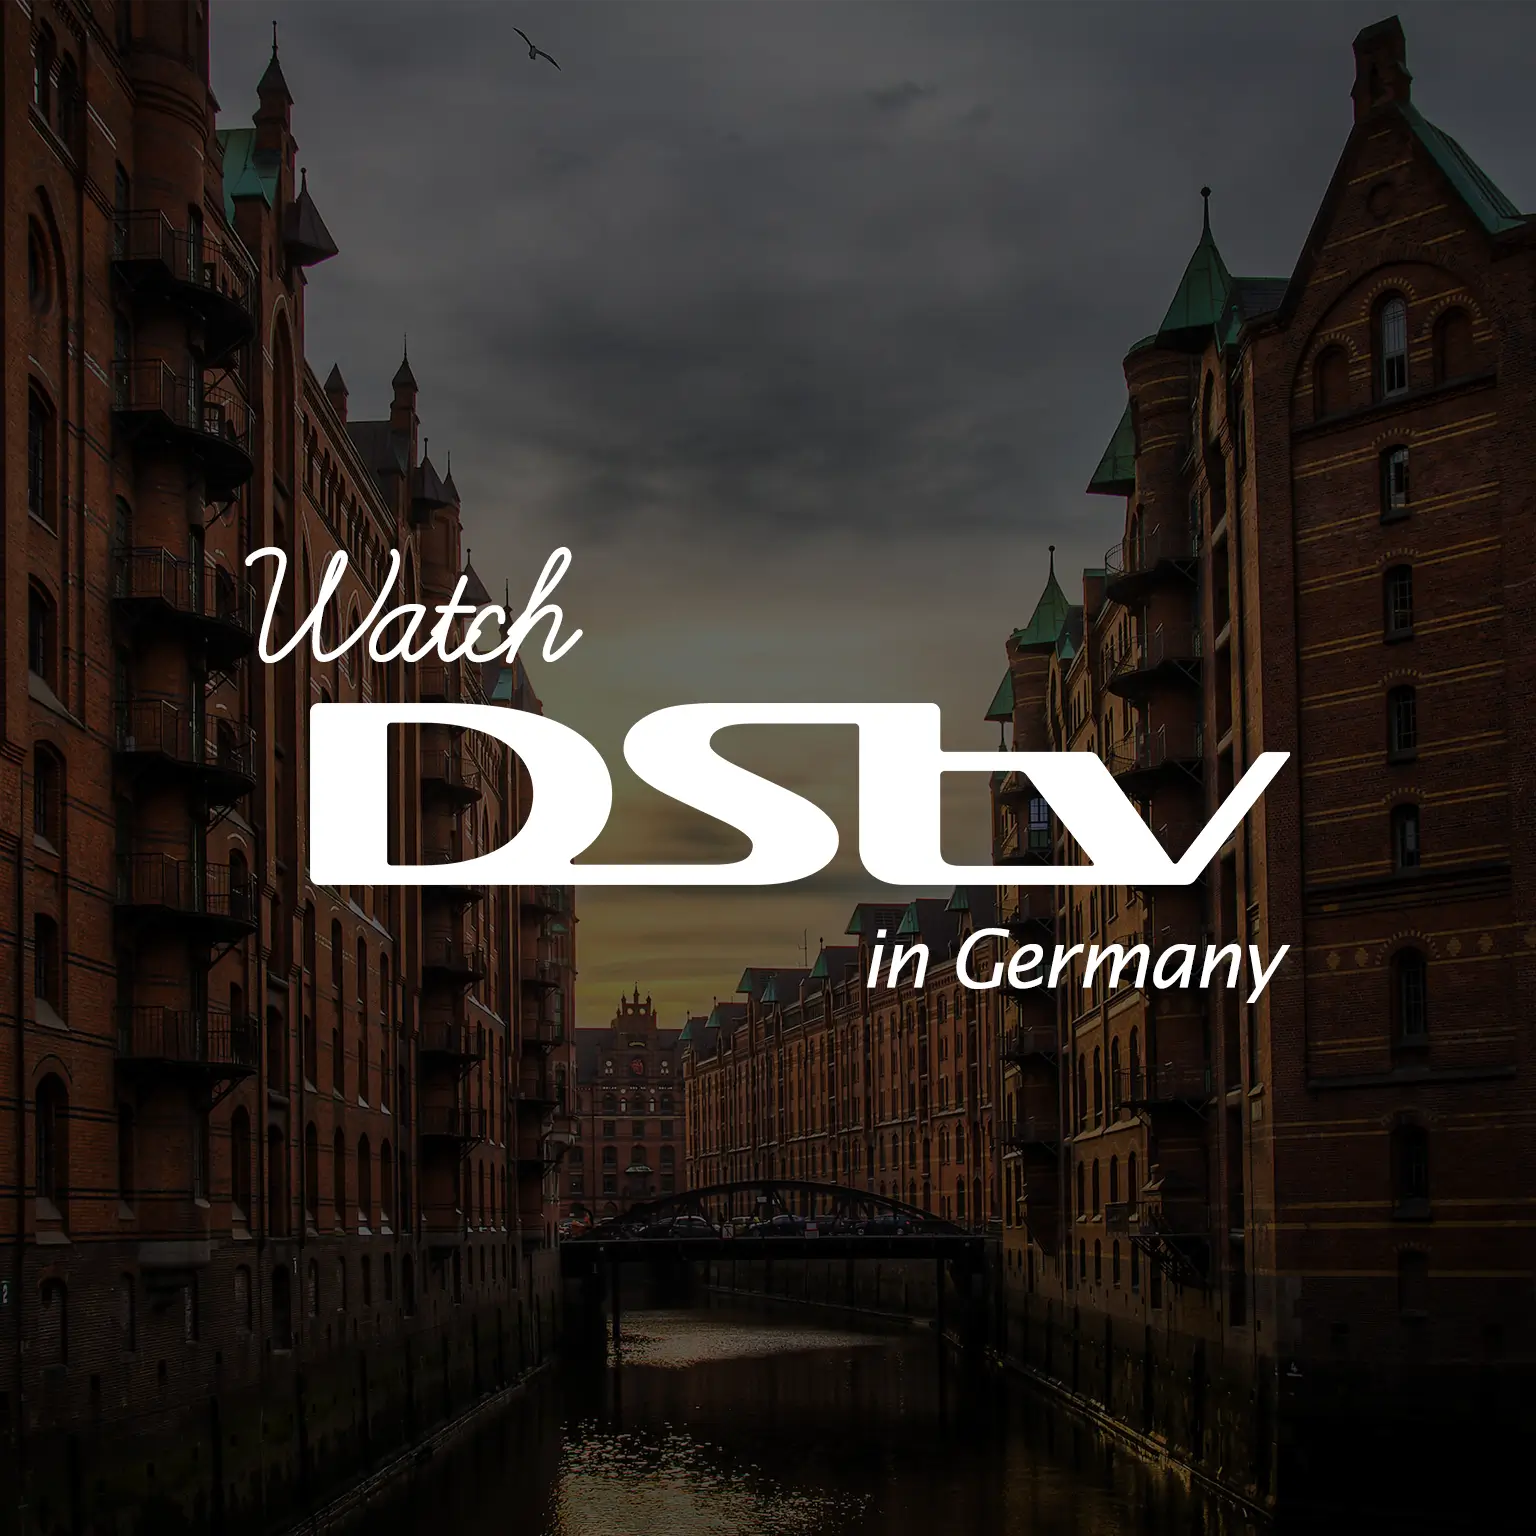 Watch DStv in Germany